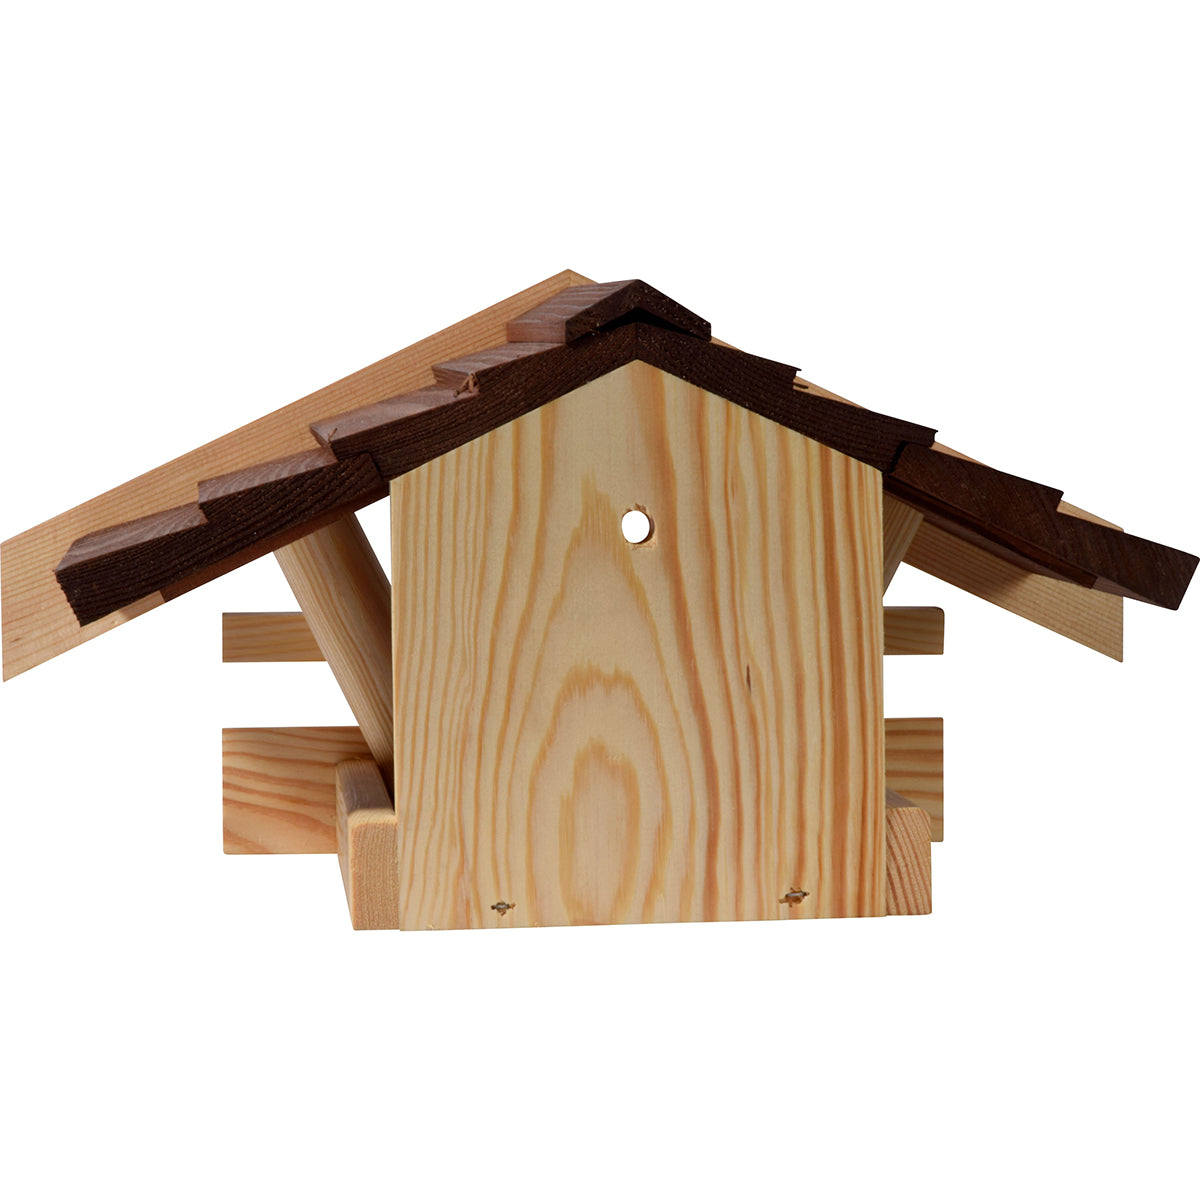 Art. 21308 - Kleines Vogelfutterhaus zum Aufhängen an Wand